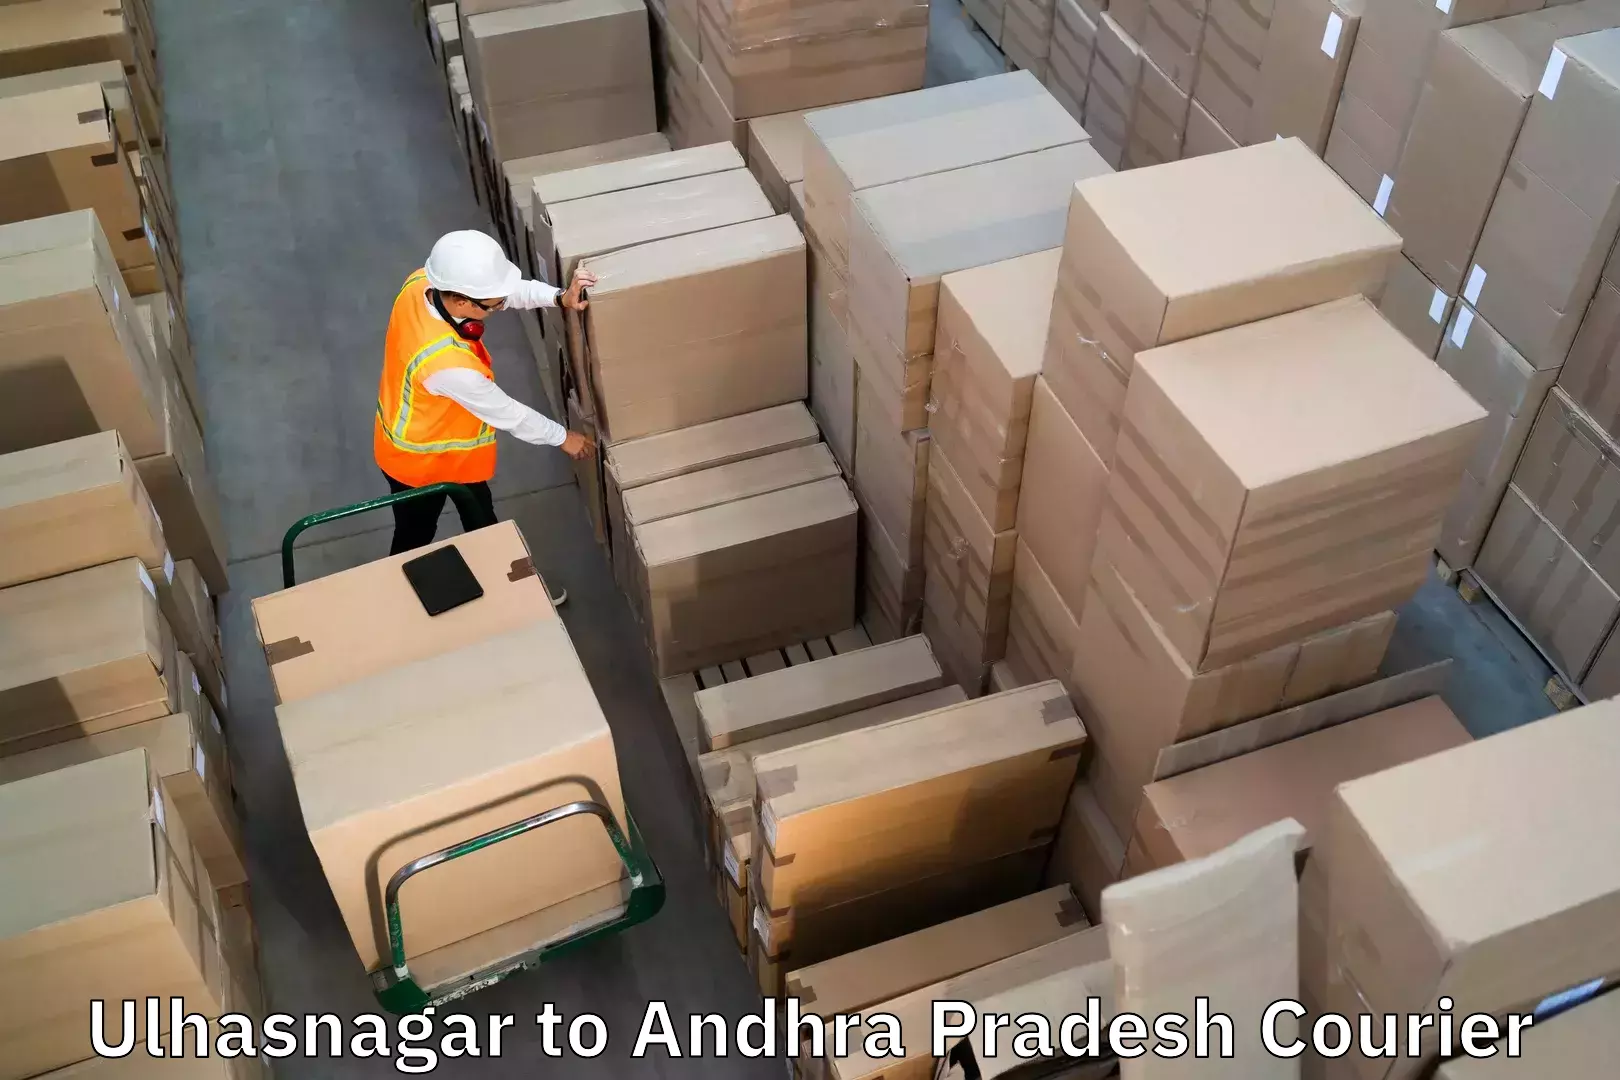 Luggage delivery operations Ulhasnagar to Gajapathinagaram